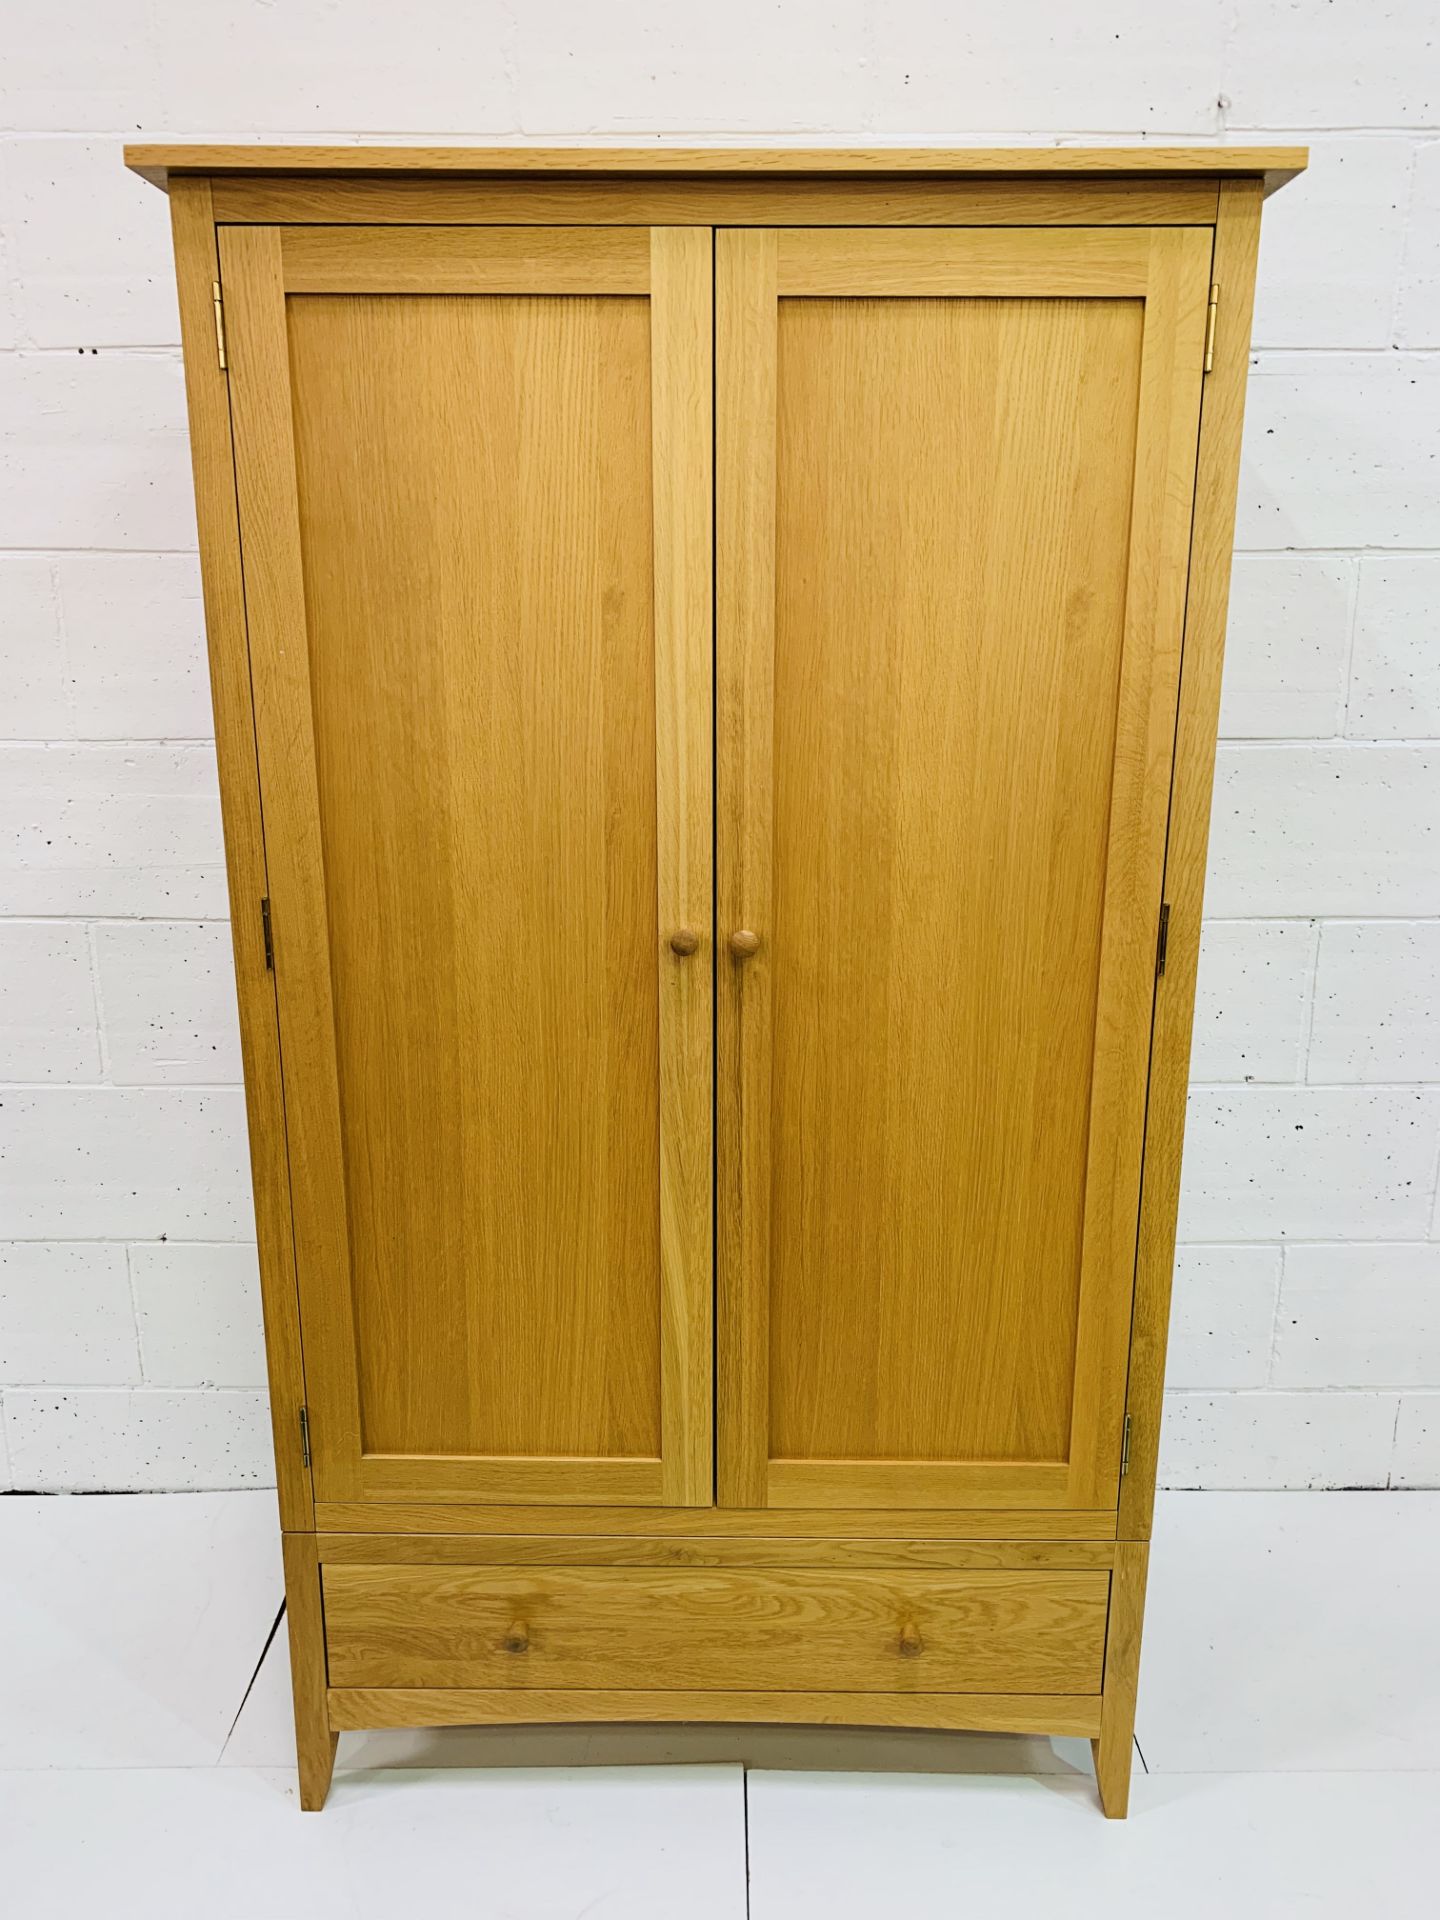 Oak double wardrobe with drawer beneath, 100 x 62 x 190cms.